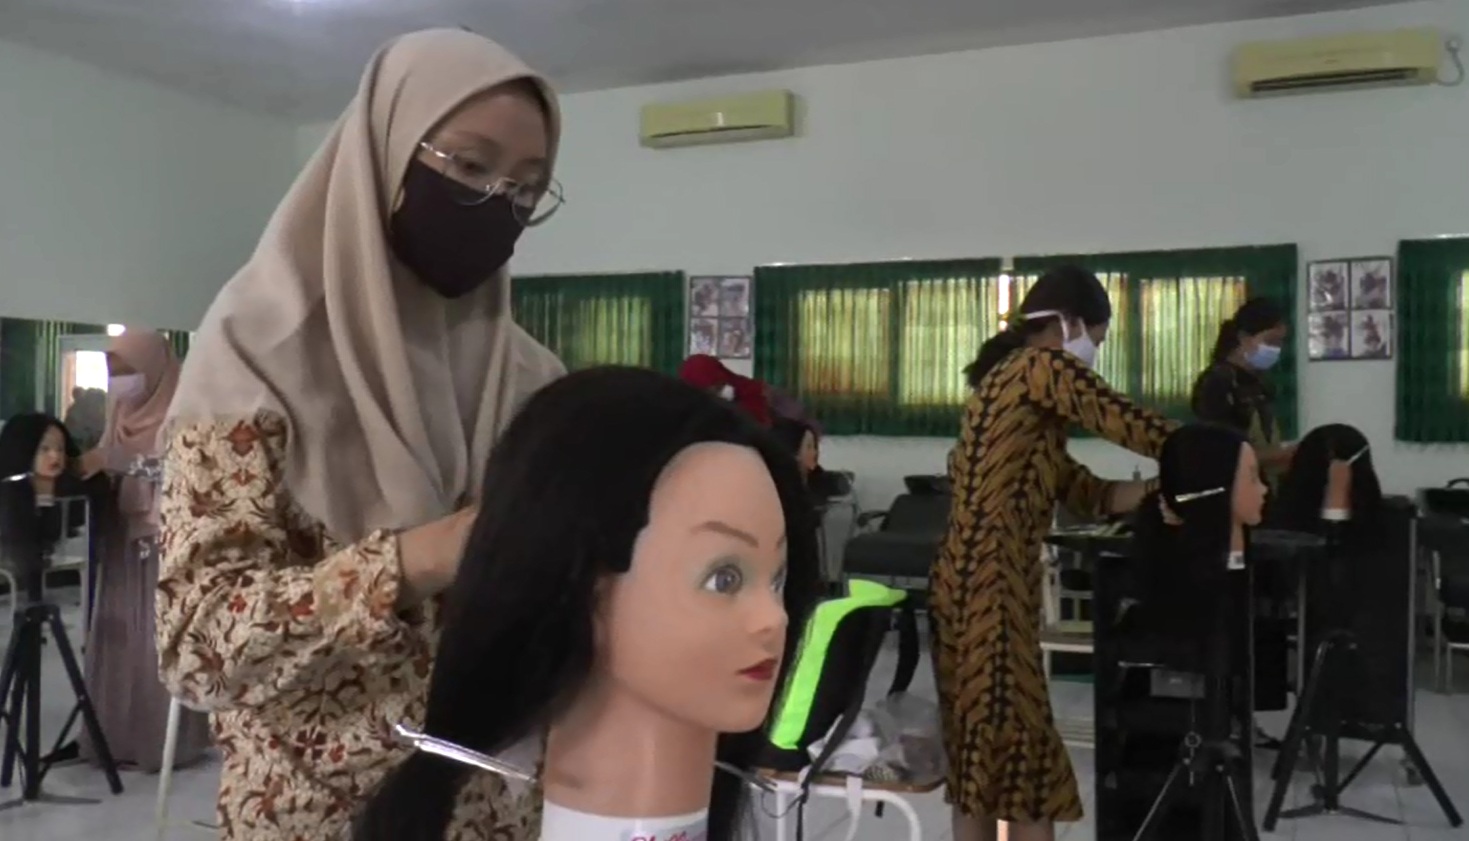 Proses belajar tatap muka SMKN 6 Surabaya berjalan dengan protokol kesehatan ketat (Foto / Metro TV)